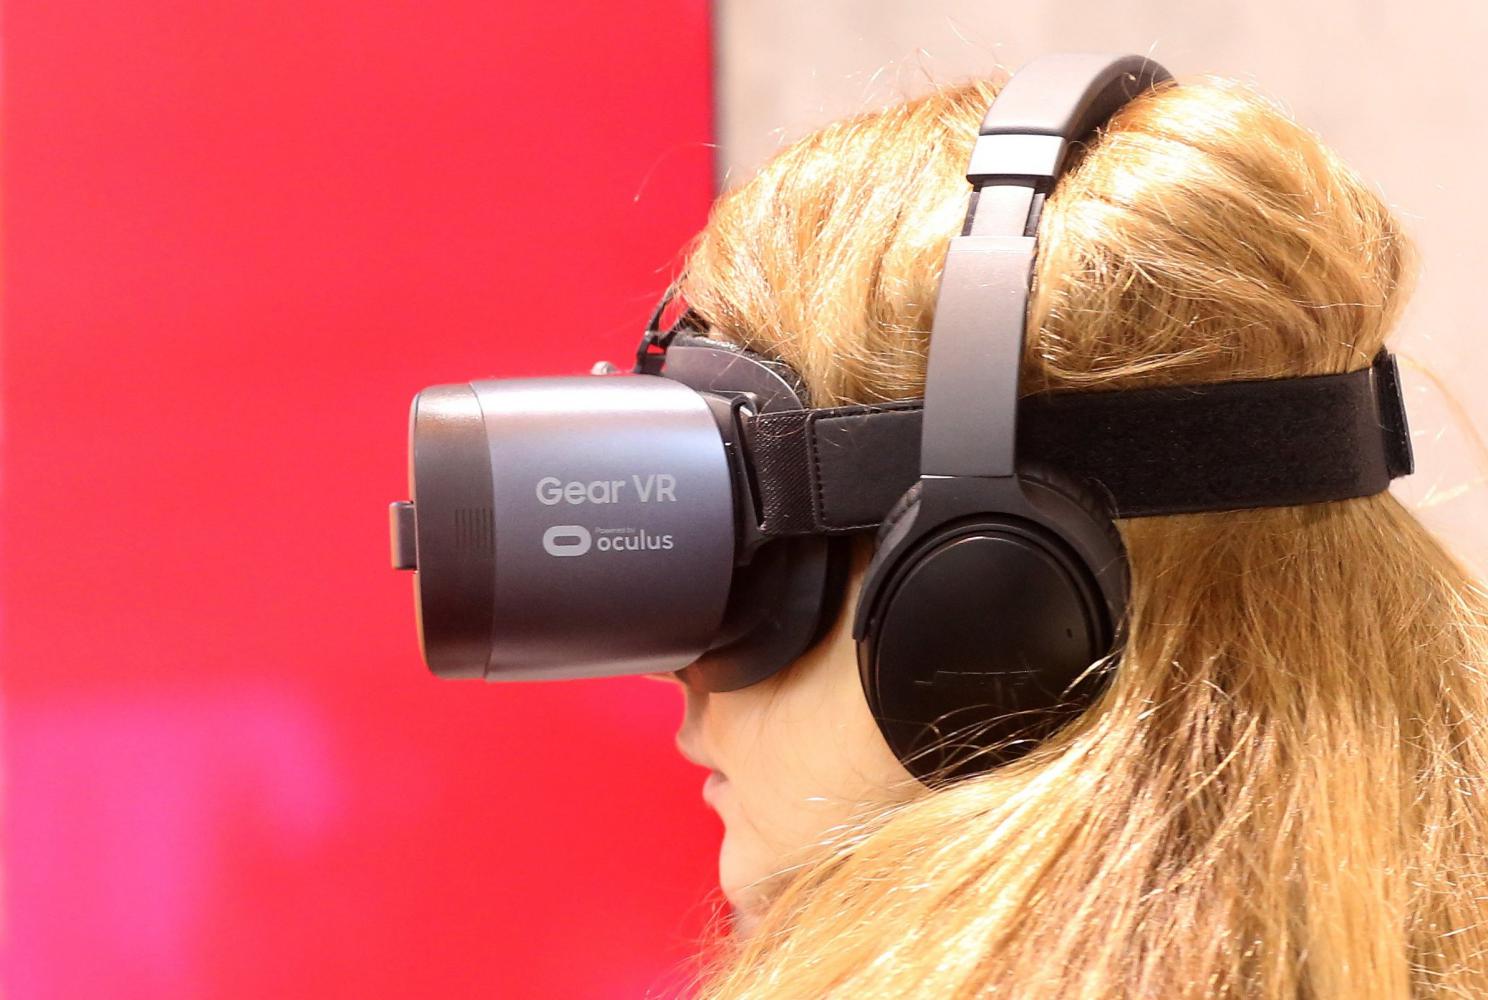 Kunst für die Brille: Ein Wettbewerb will Virtual-Reality-Werke fördern